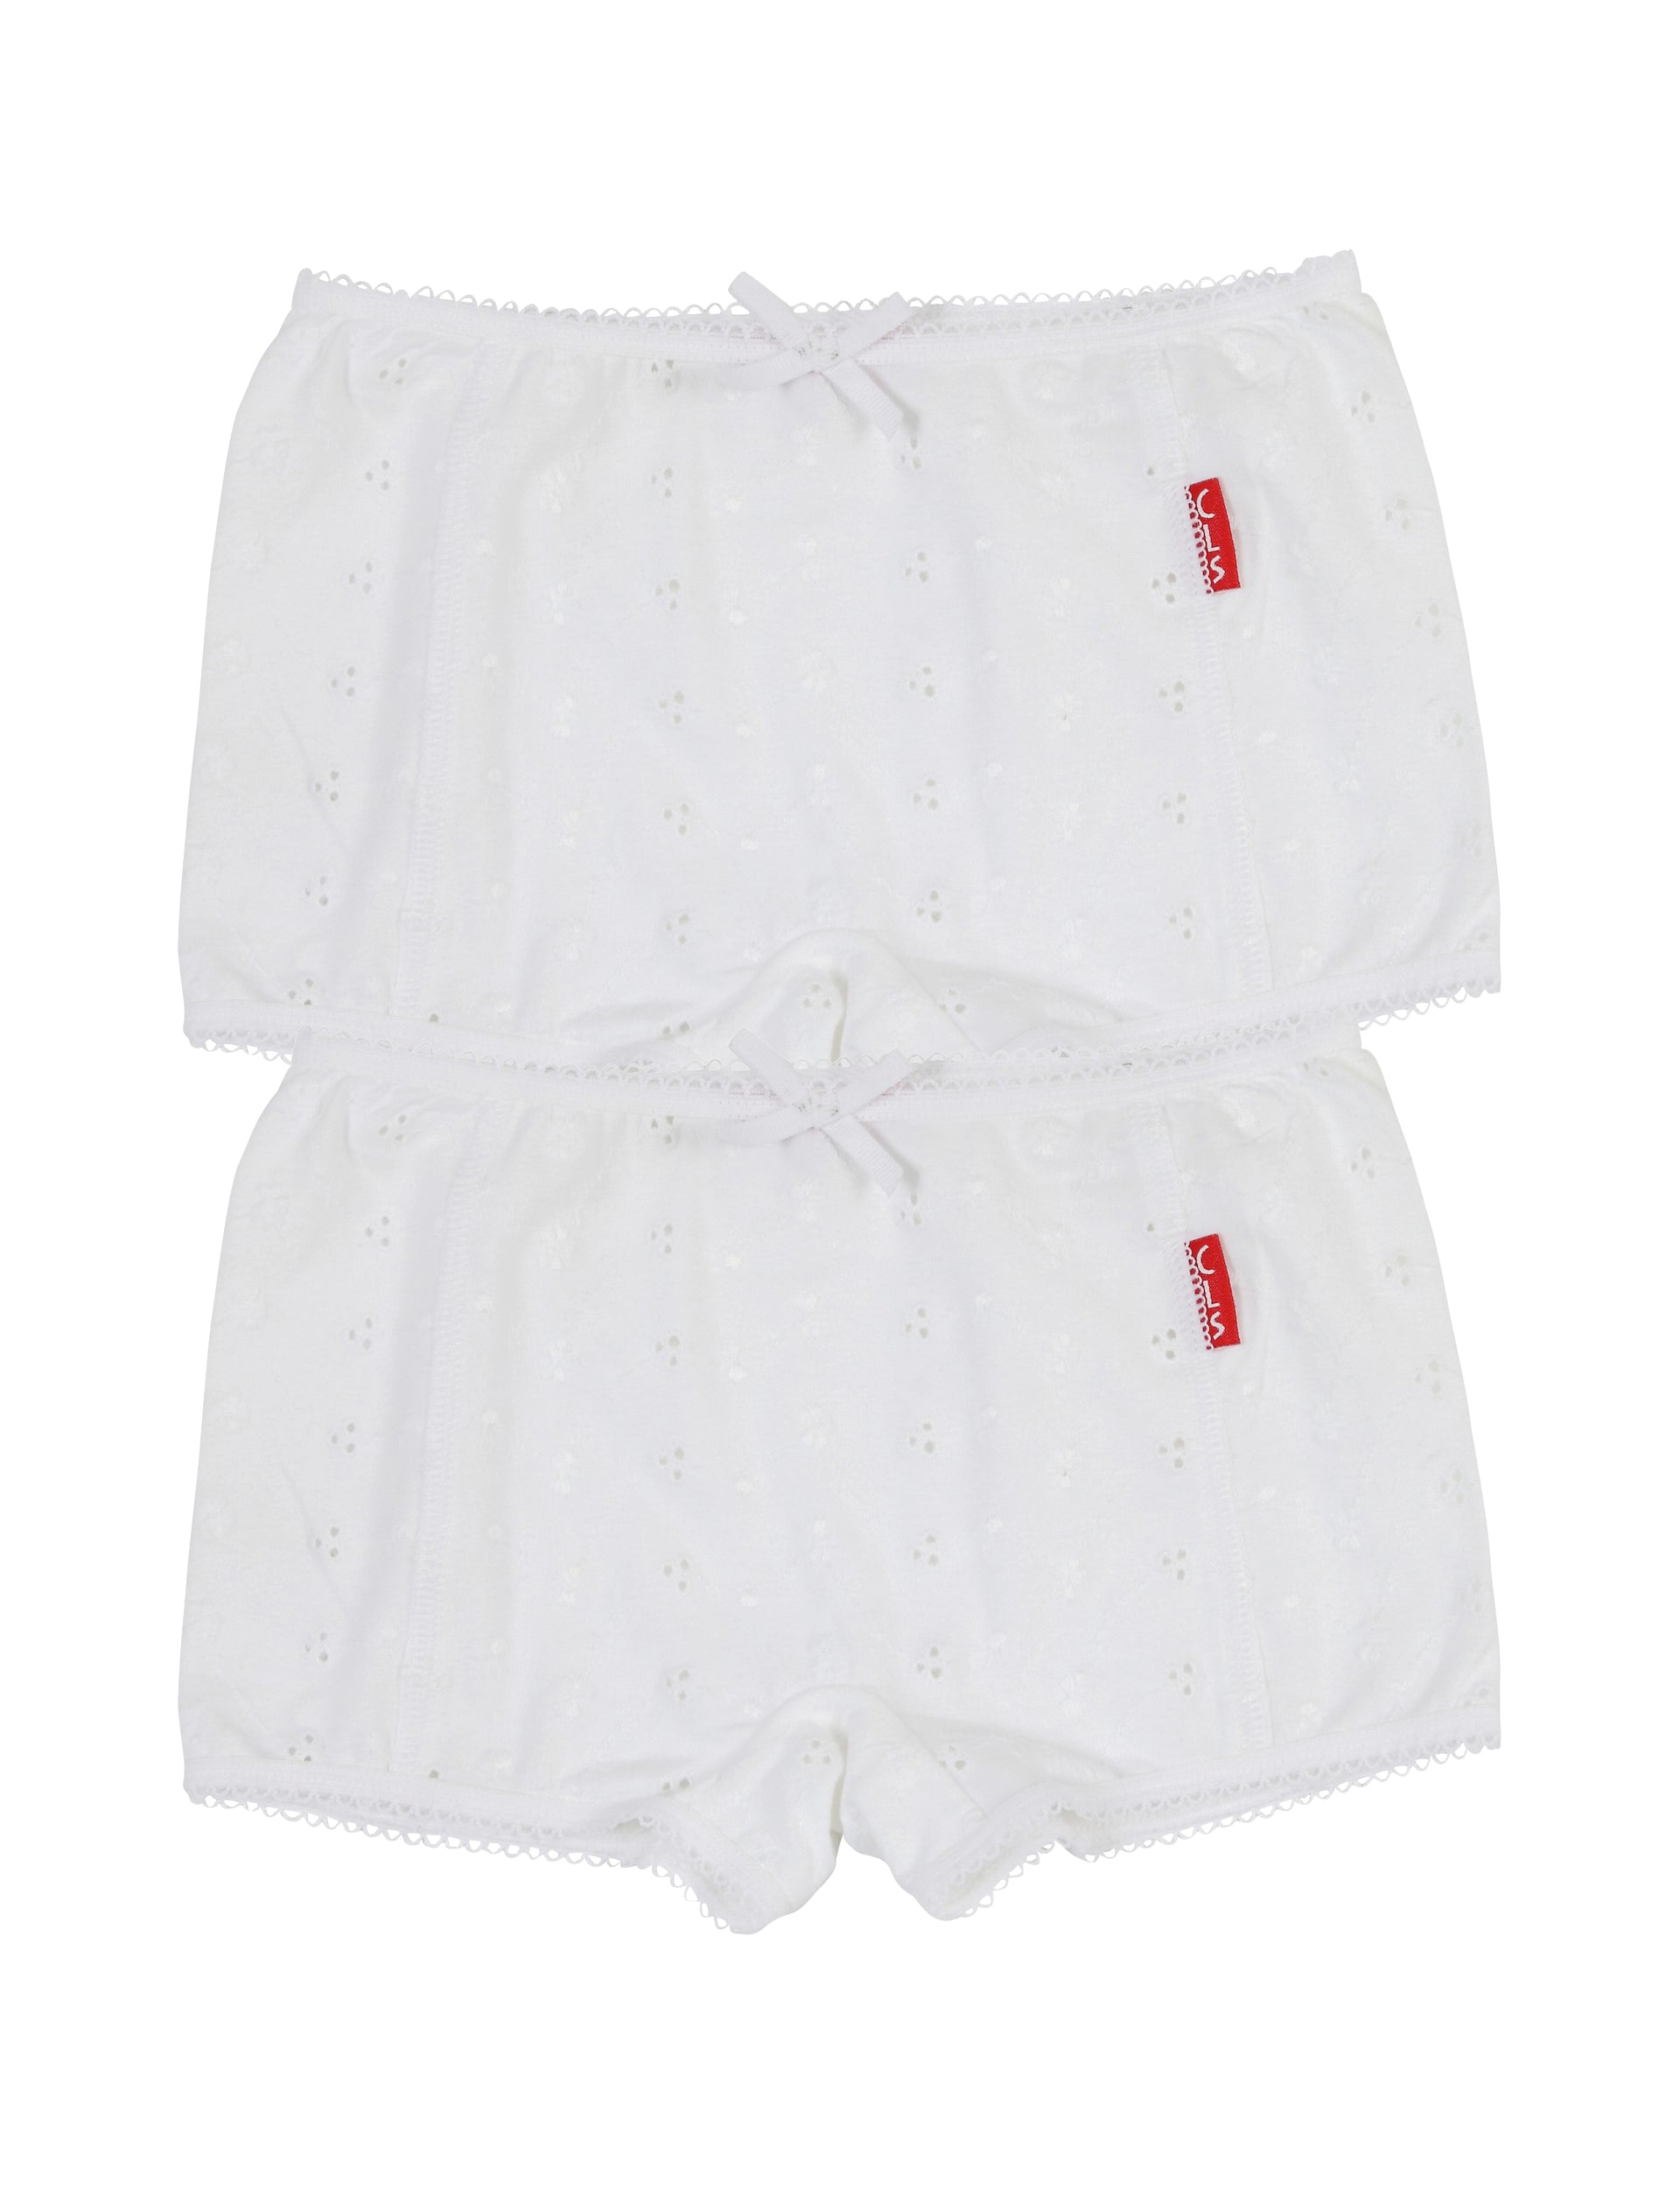 Meisjes Girls 2-Pack Boxer van Claesen's in de kleur White Embroidery in maat 152.